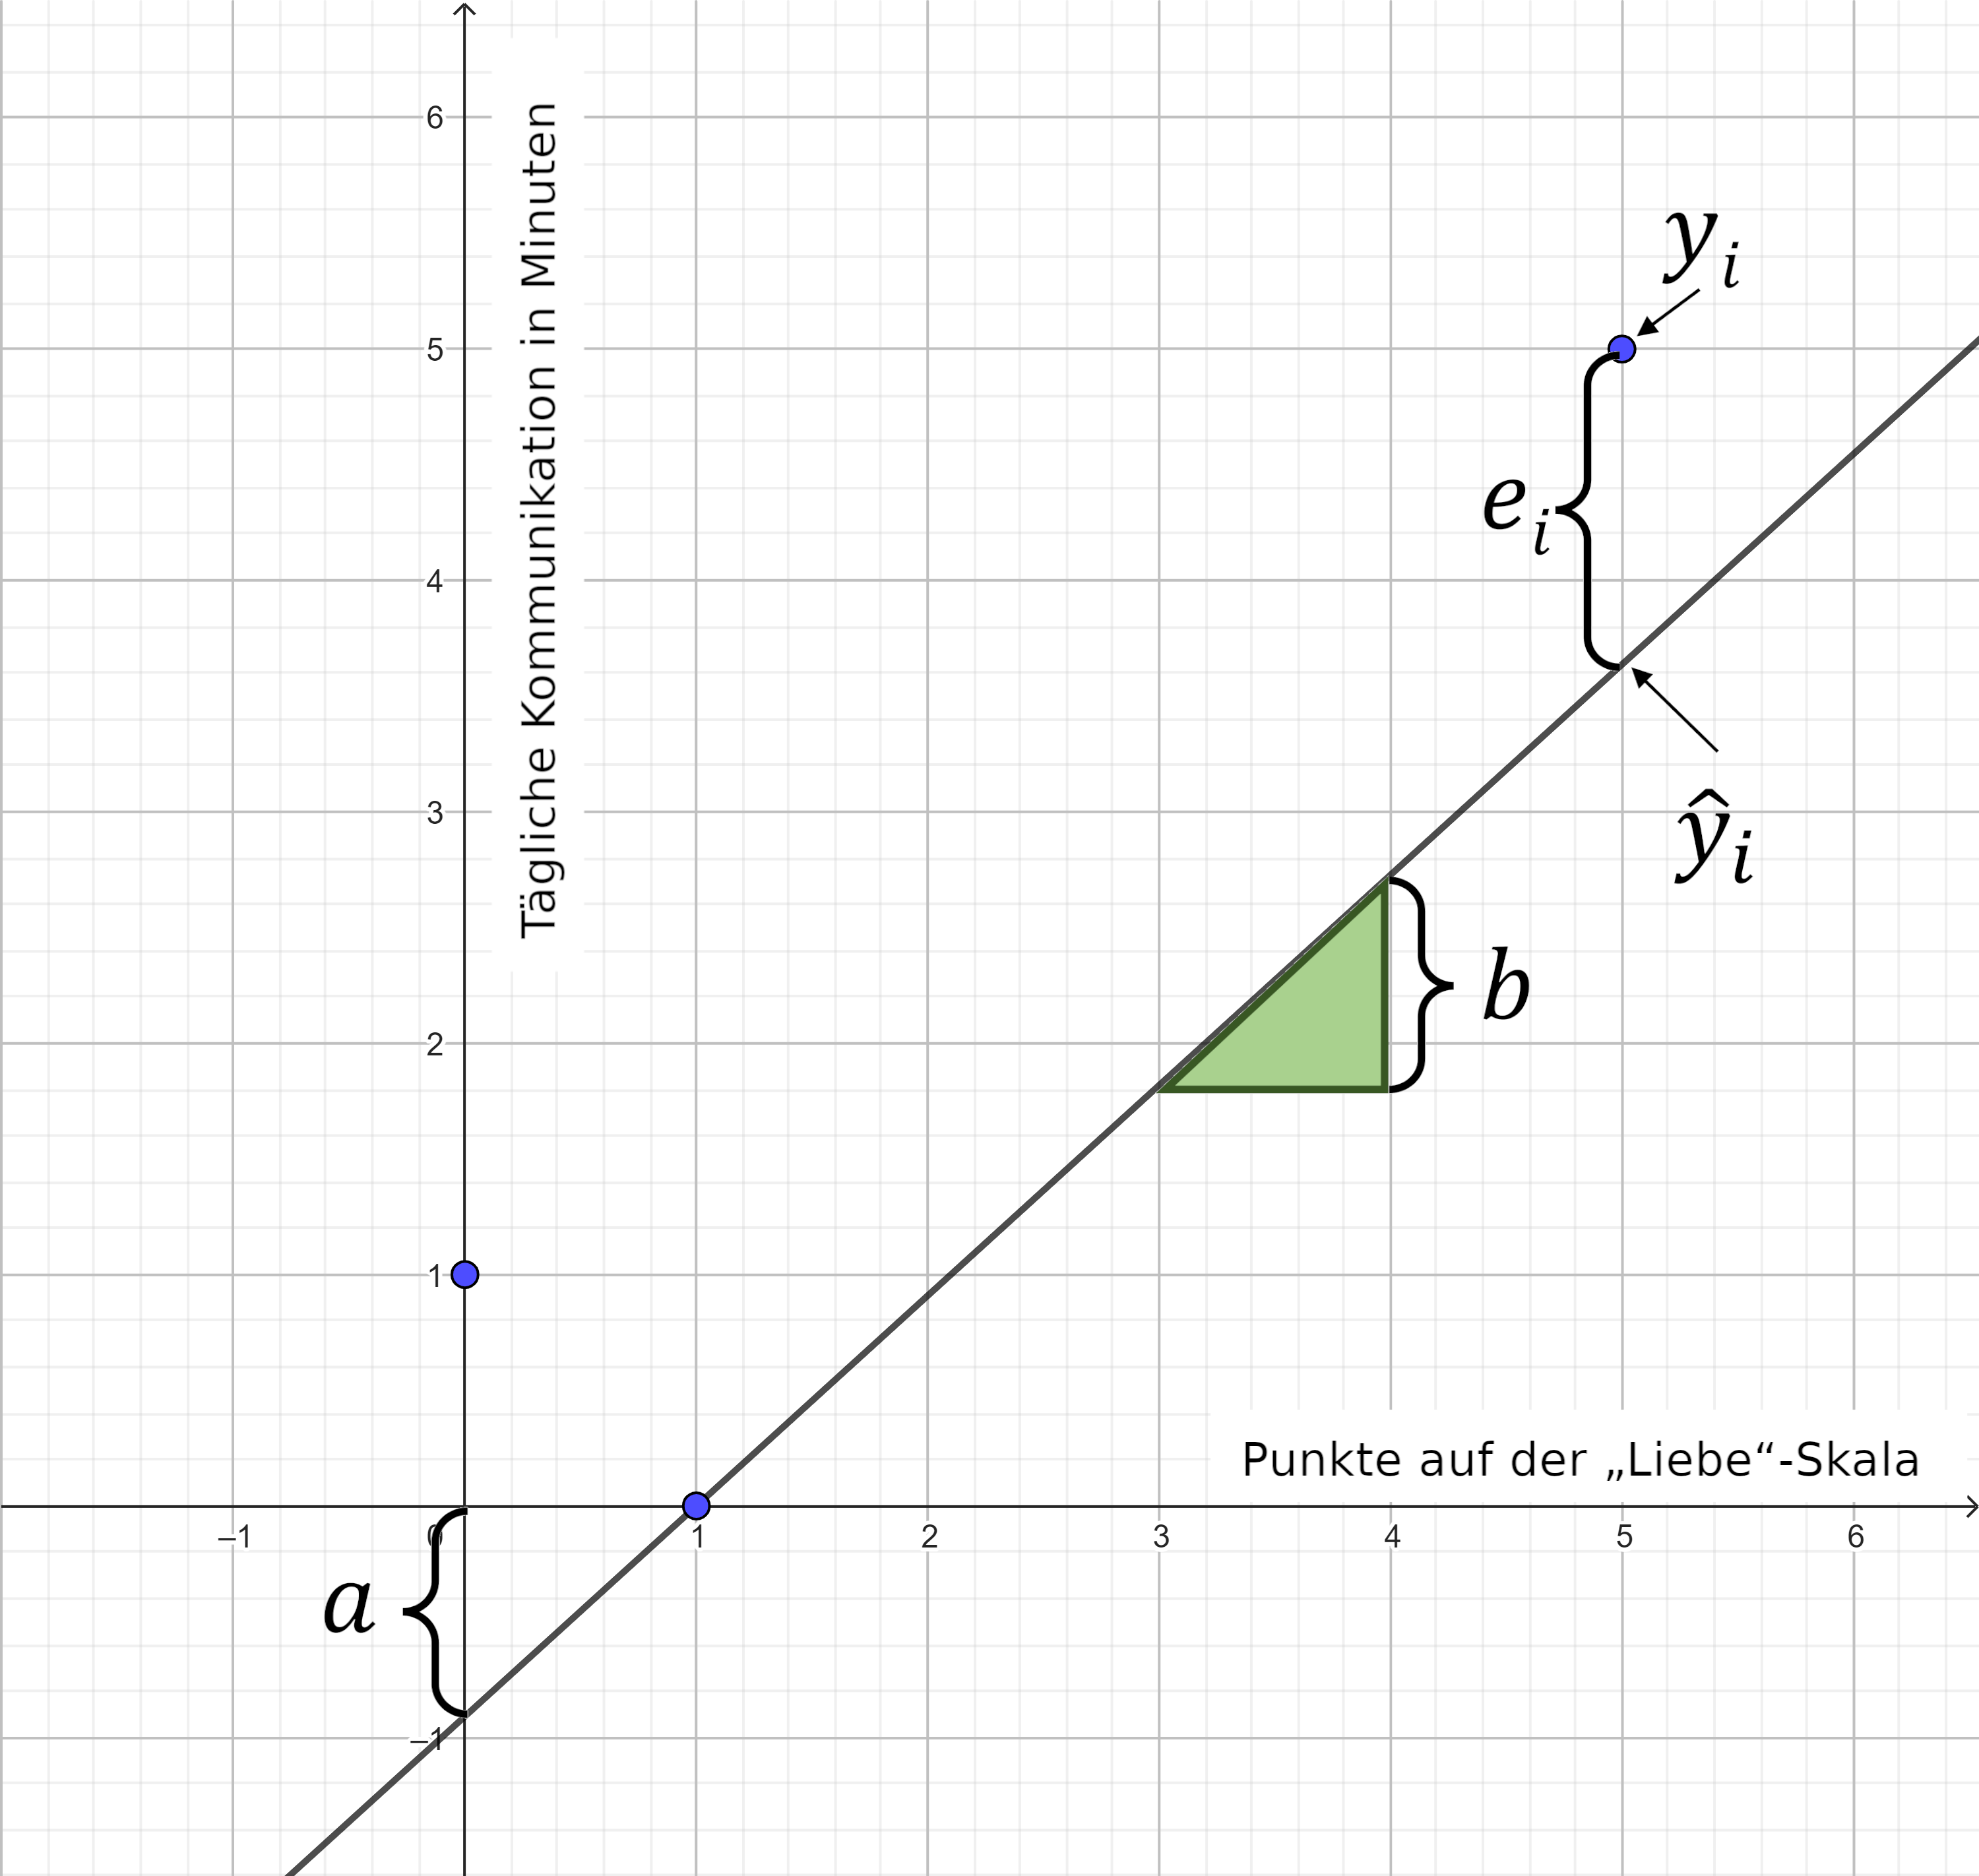 In einem x-y-Diagramm befinden sich an unterschiedlichen Stellen 3 blaue Punkte. Die x-Wert-Achse ist bezeichnet mit dem Text „Punkte auf der „Liebe“-Skala“. Die y-Wert-Achse ist bezeichnet mit dem Text „Tägliche Kommunikation in Minuten“. Eine graue Gerade verläuft durch die gesamte Diagrammfläche von links-unten nach rechts-oben. Die Strecke des Schnittpunkts von grauer Gerade und y-Achse zum Ursprung des x-y-Diagramms misst eine geschweifte Klammer, die mit einem kleinen a beschriftet ist. Die Gegenkathete des grünen Steigungsdreiecks misst eine geschweifte Klammer, die mit einem kleinen b beschriftet ist. Die vertikale Strecke von einem Punkt, beschriftet mit y-Dach-klein-i, auf der grauen Geraden zu einem der blauen Punkte, beschriftet mit y-klein-i, misst eine geschweifte Klammer, die mit einem kleinen e-klein-i beschriftet ist.